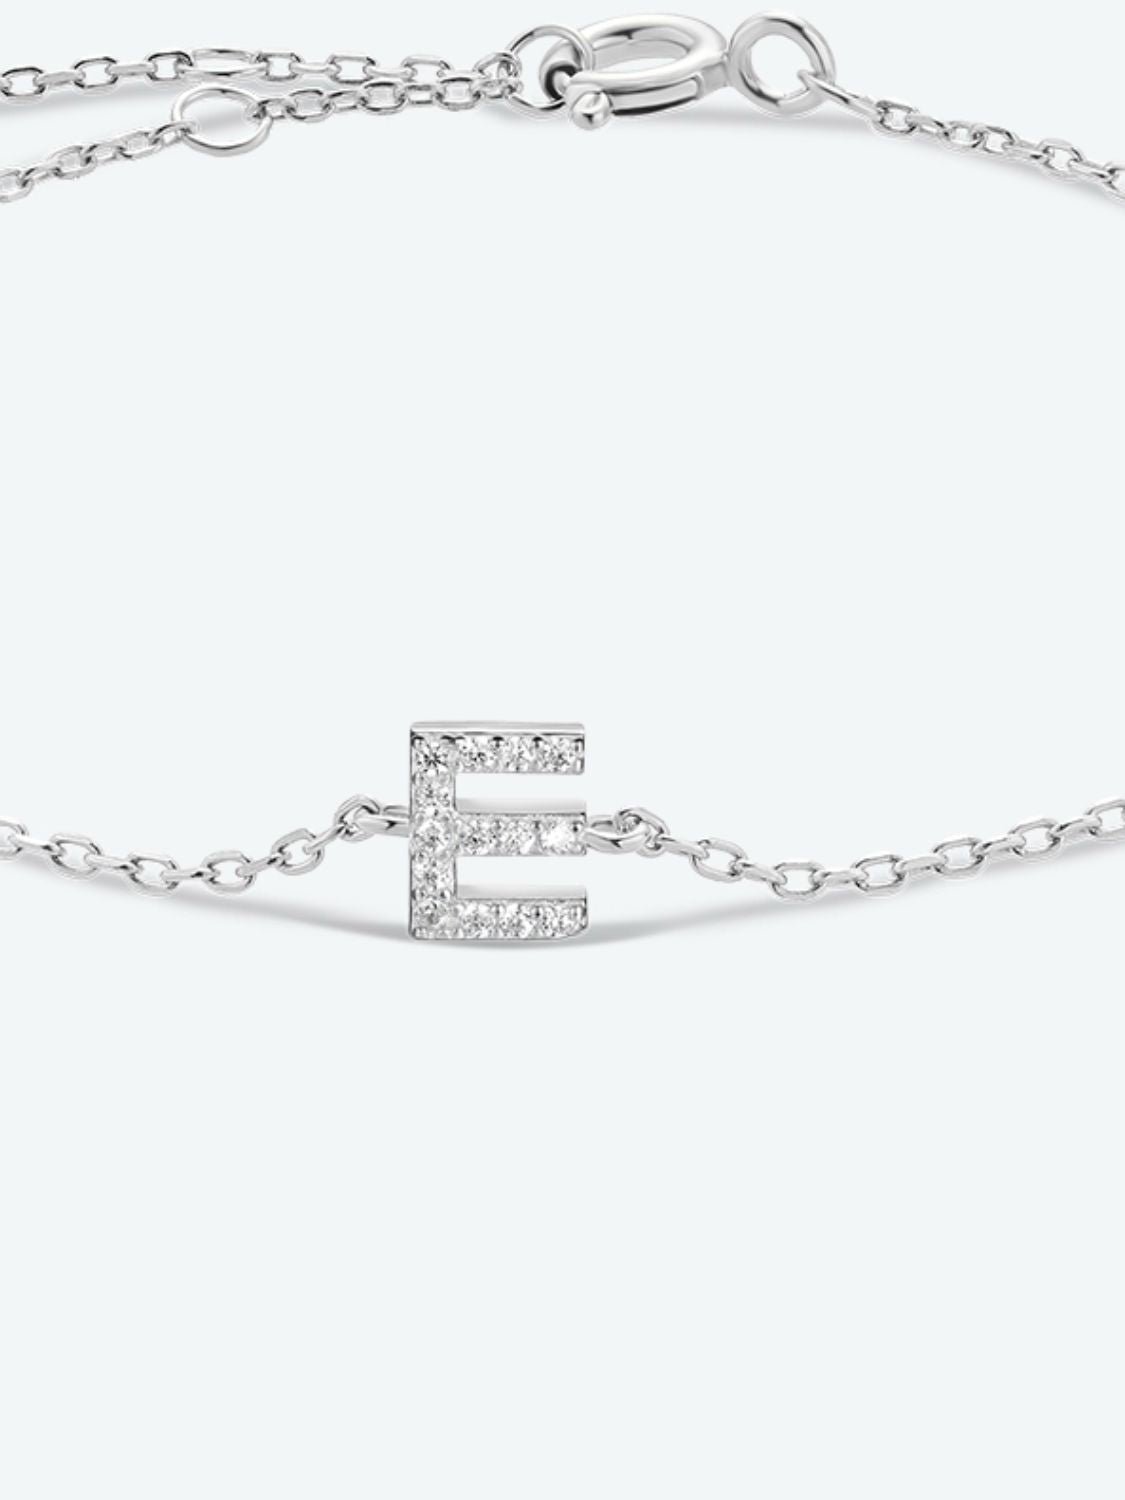 A To F Zircon 925 Sterling Silver Bracelet - Women’s Jewelry - Bracelets - 30 - 2024